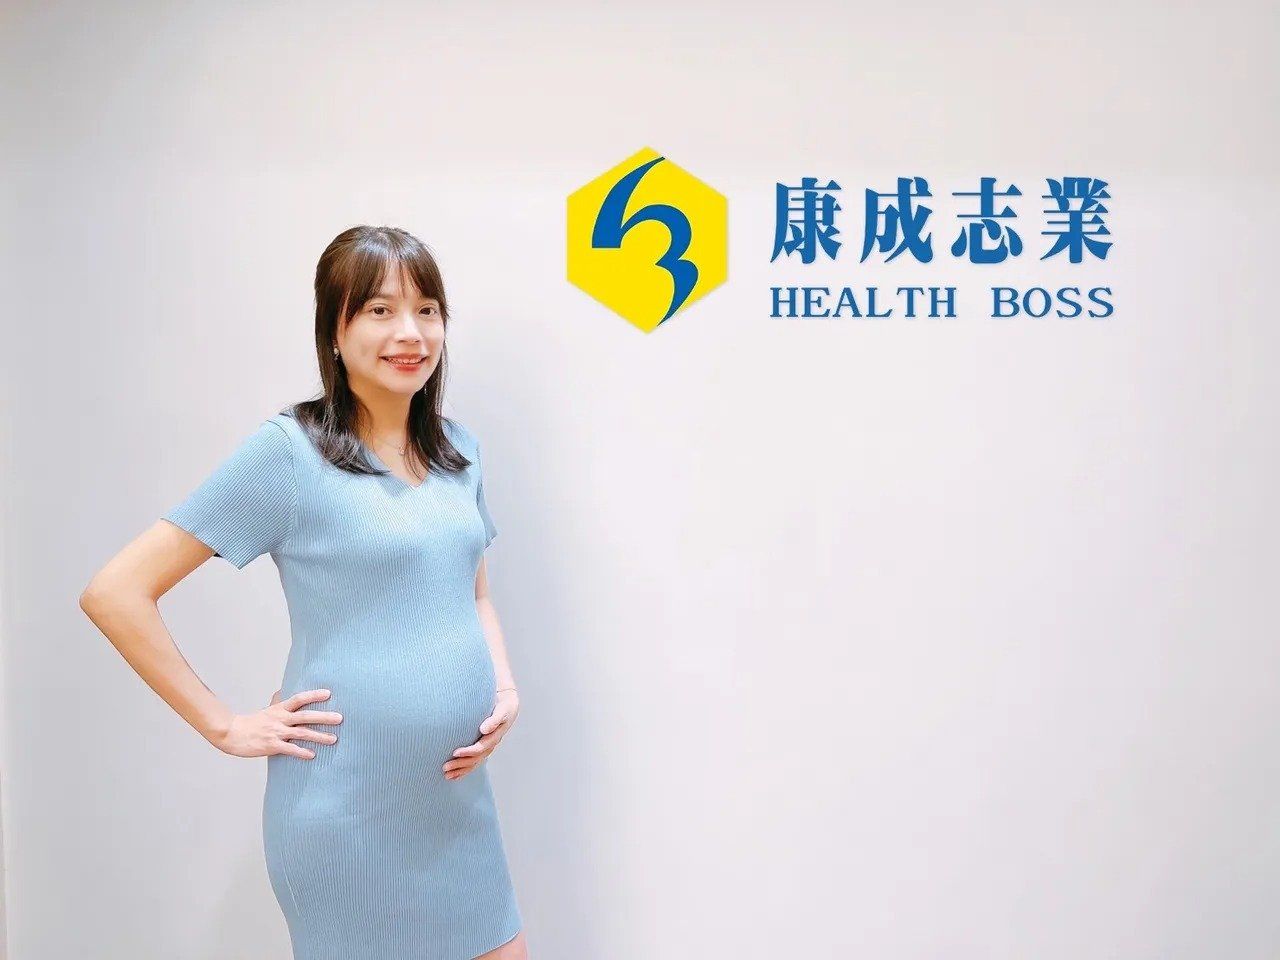 擁有十多年職場經歷的徐瑋君，能在懷孕期間持續將職場經營得發光發熱，安心的發揮職場女力，完全歸功於康成志業保健行銷對於員工設計出一套貼心的居家工作模式。